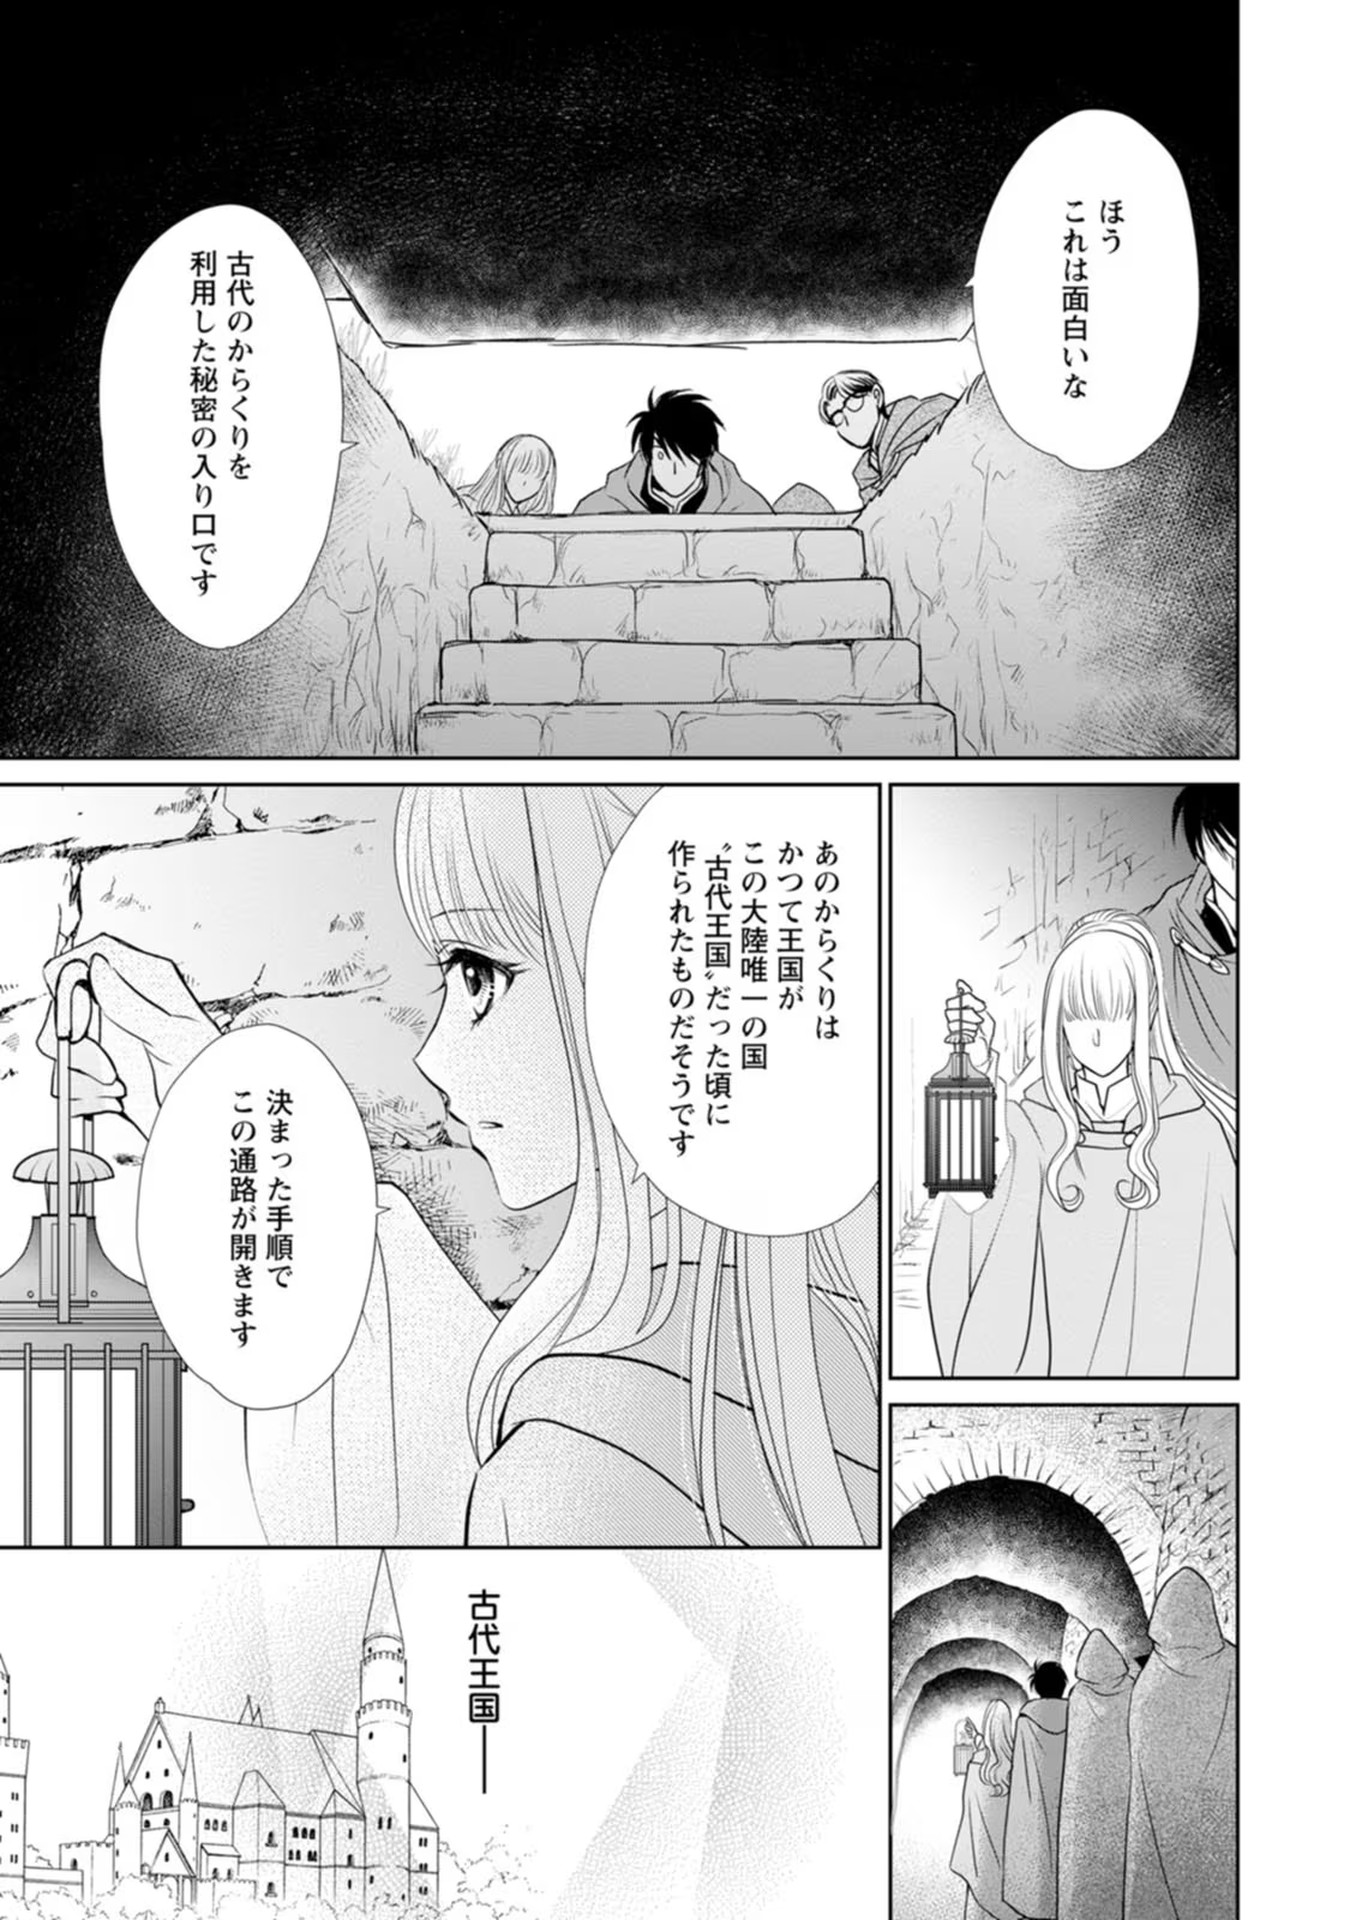 Shinjitsu no Ai wo Mitsuketa to Iwarete Konyaku Haki Saretanode, Fukuen wo Semararete mo Imasara mo Osoi desu! - Chapter 10 - Page 25